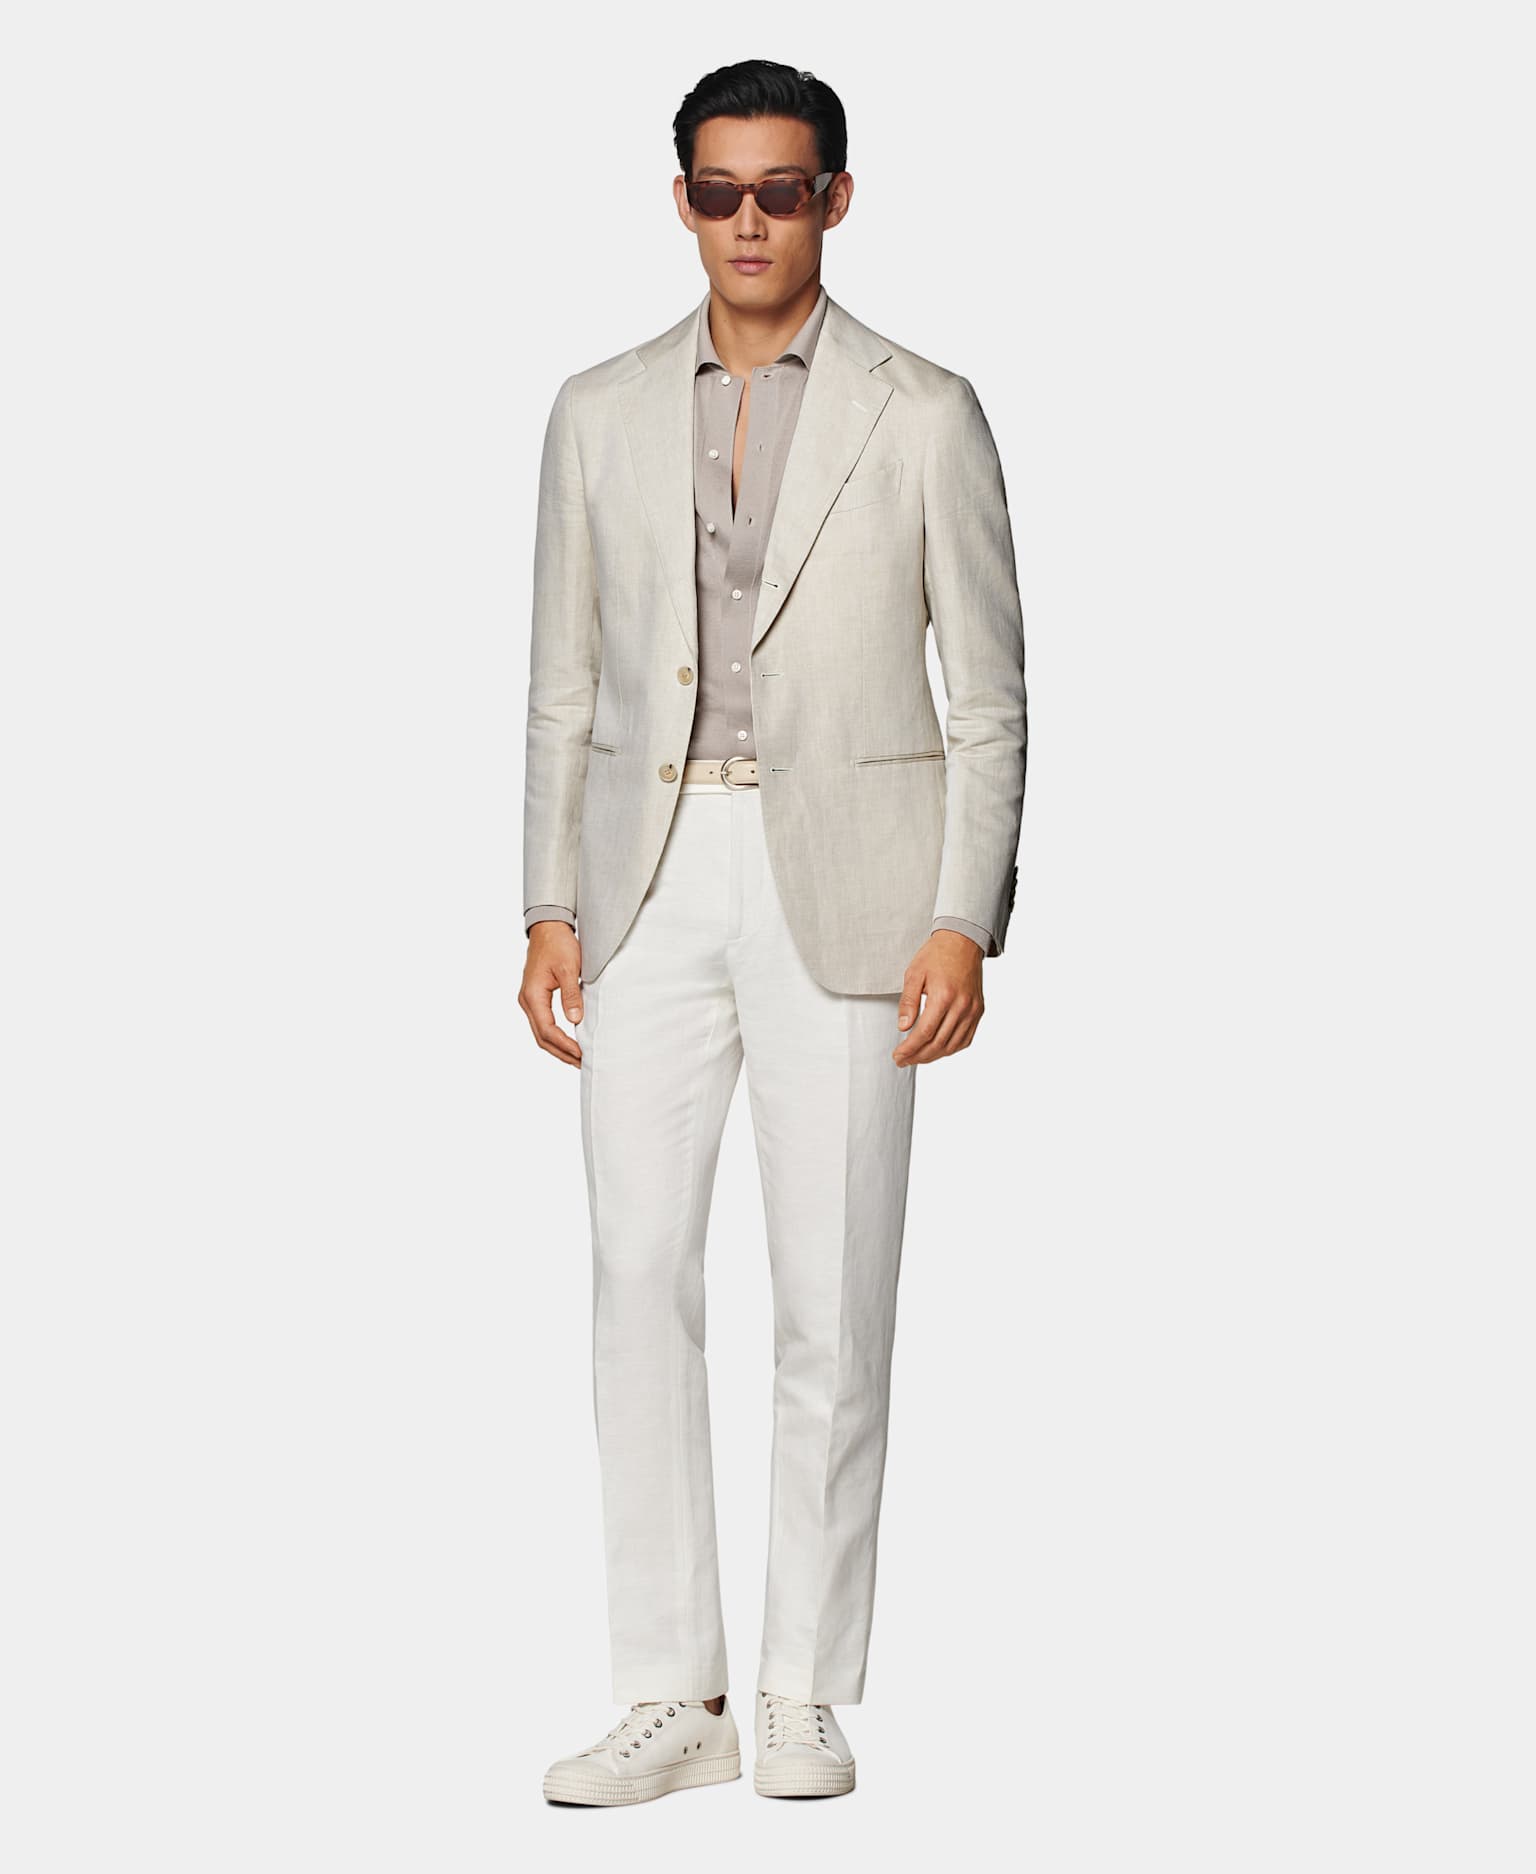 Blazer marron clair avec chemise taupe, ceinture couleur naturelle, pantalon blanc et sneakers en toile blanc cassé.